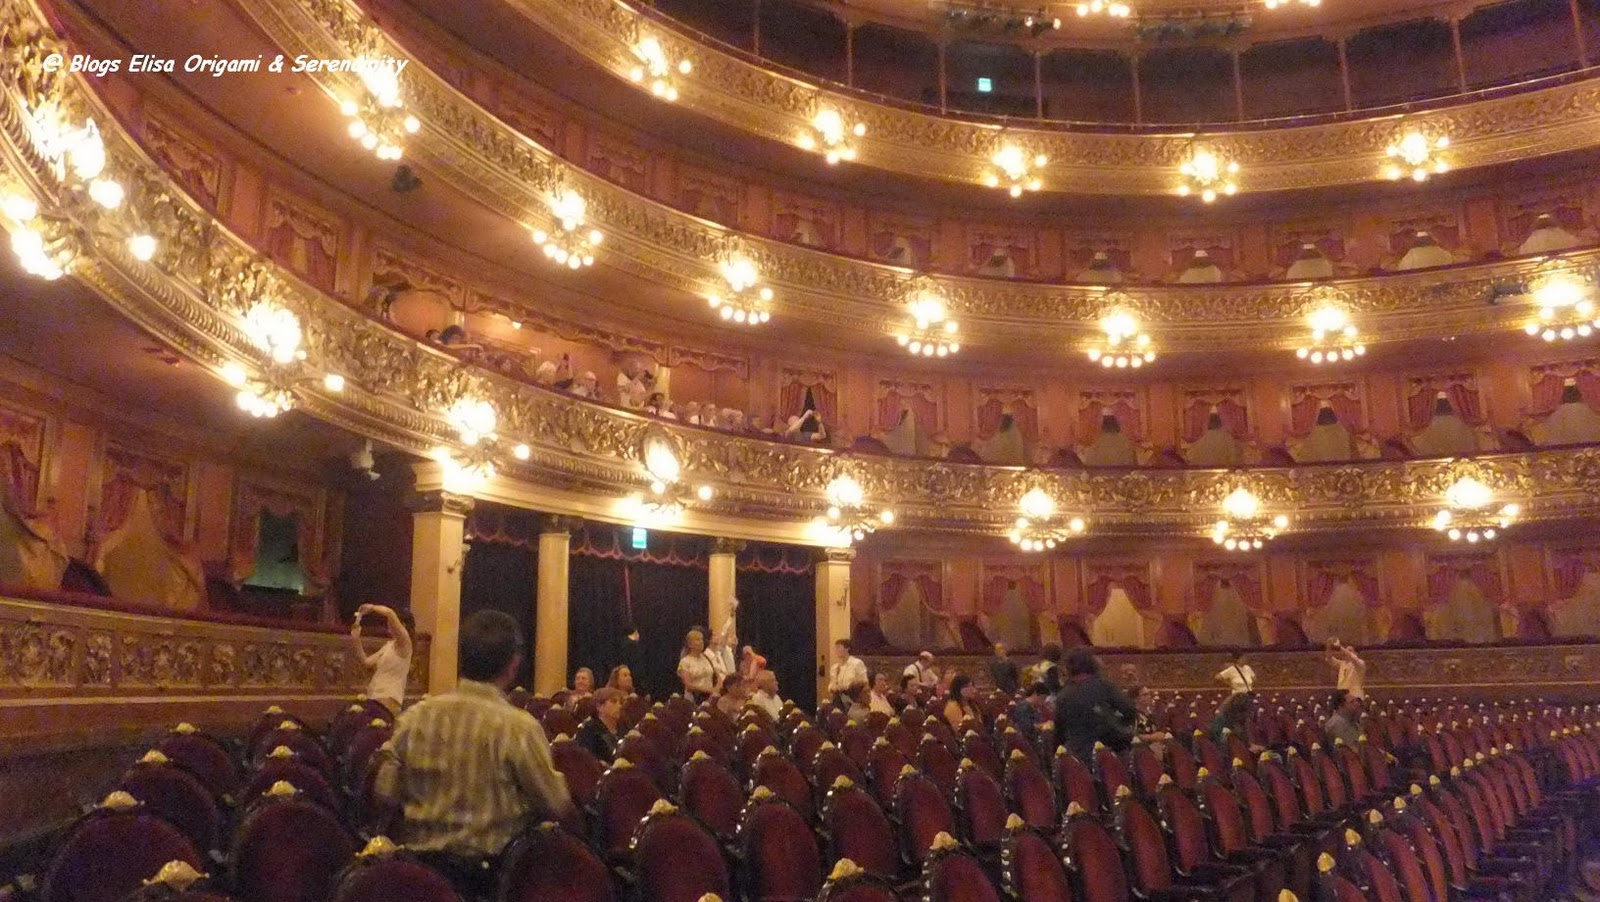 Visita guiada al Teatro Colón, Ópera, Buenos Aires, Argentina, Elisa N, Blog de Viajes, Lifestyle, Travel